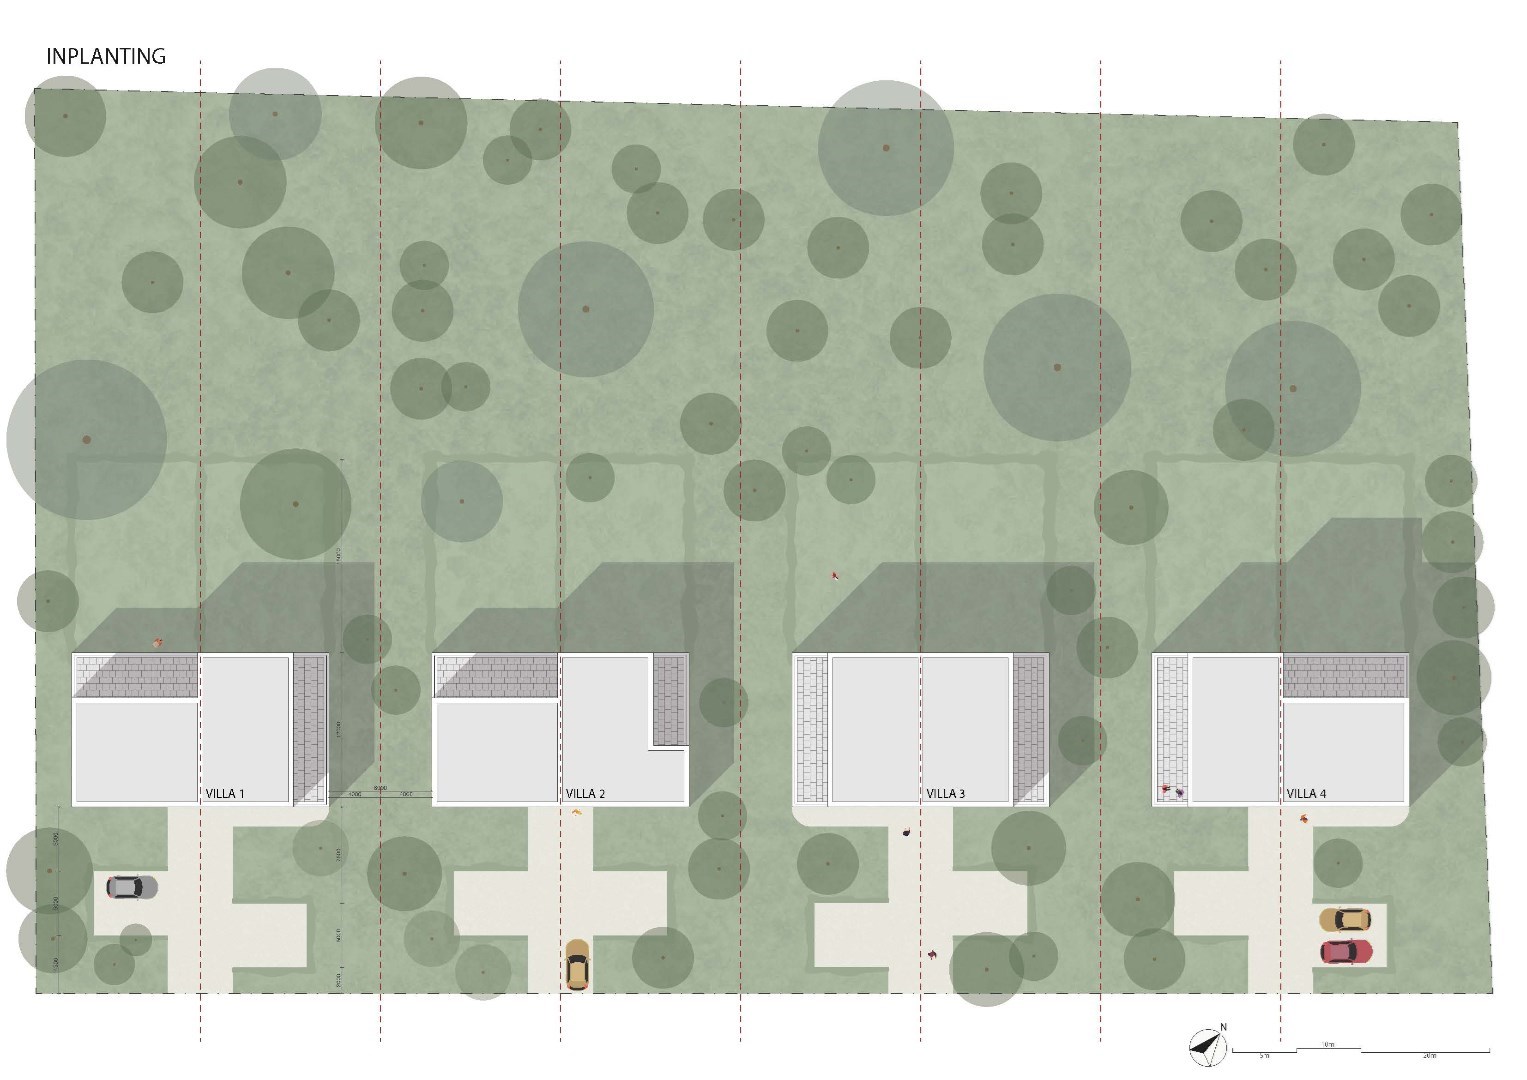 Knappe bouwgrond voor een drie-gevel villa met achterliggend bos 